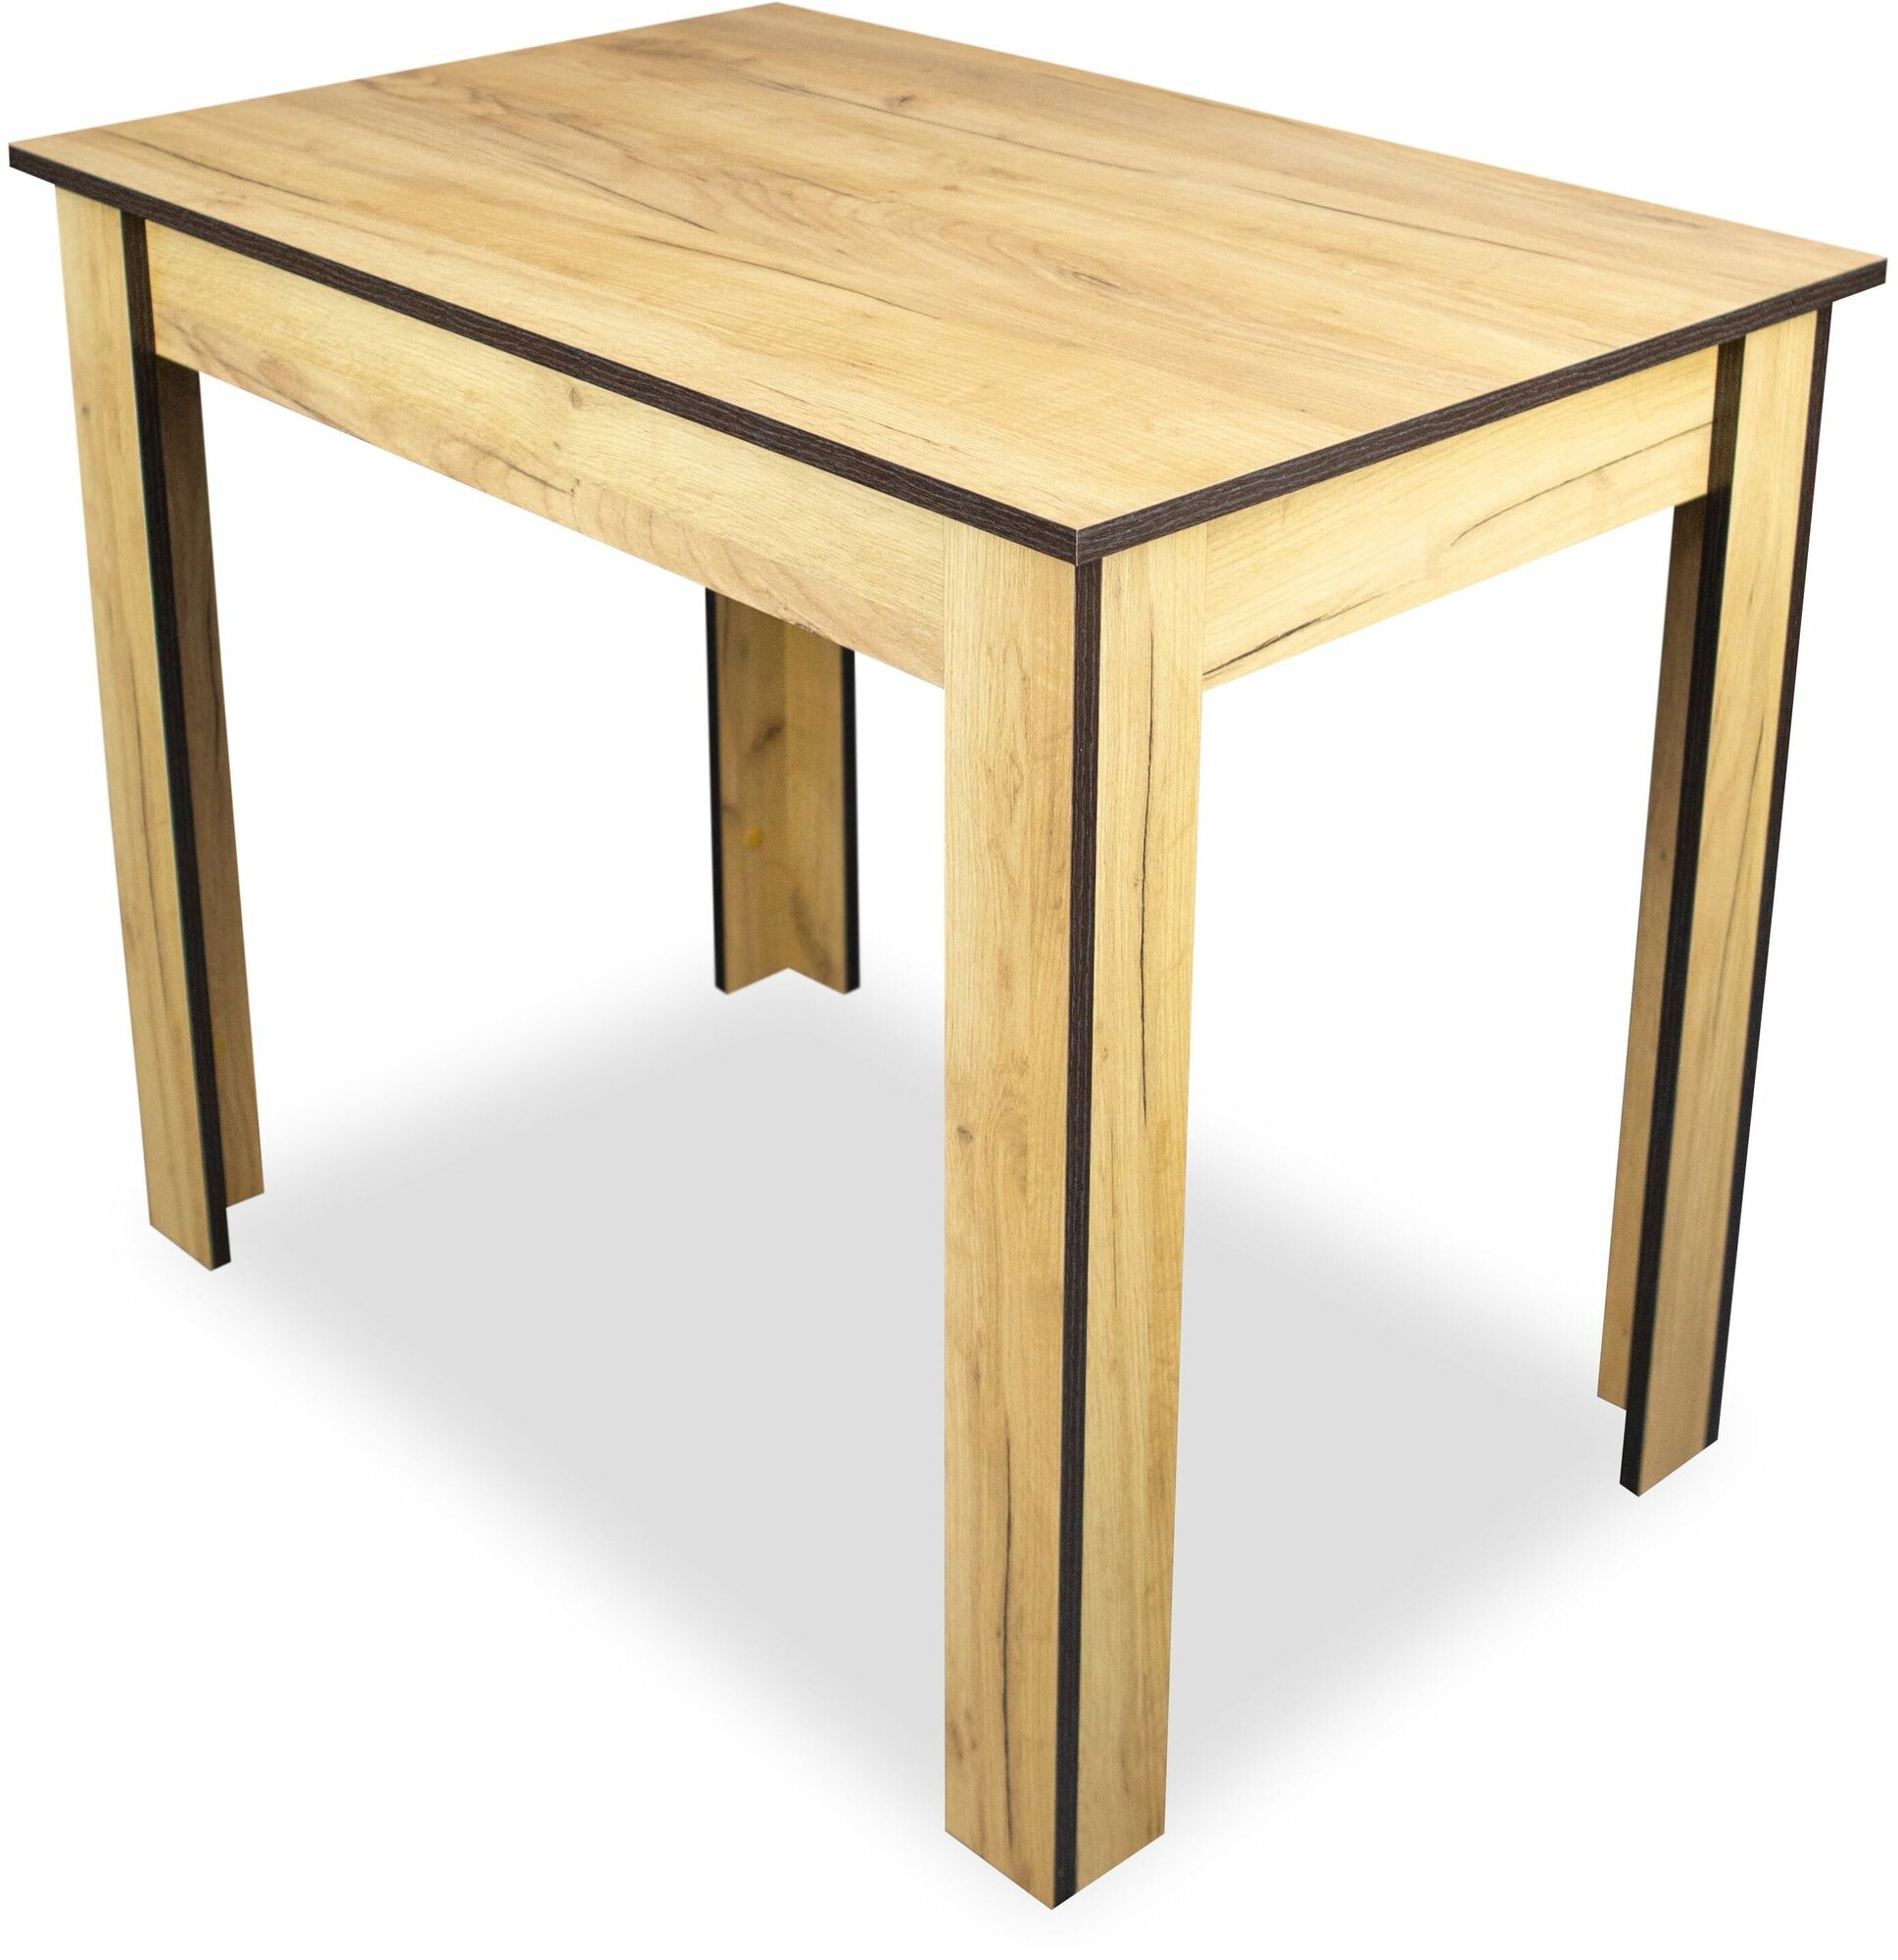 Стол обеденный Hesby Kitchen table 6, дуб золотой, деревянный стол - фотография № 5